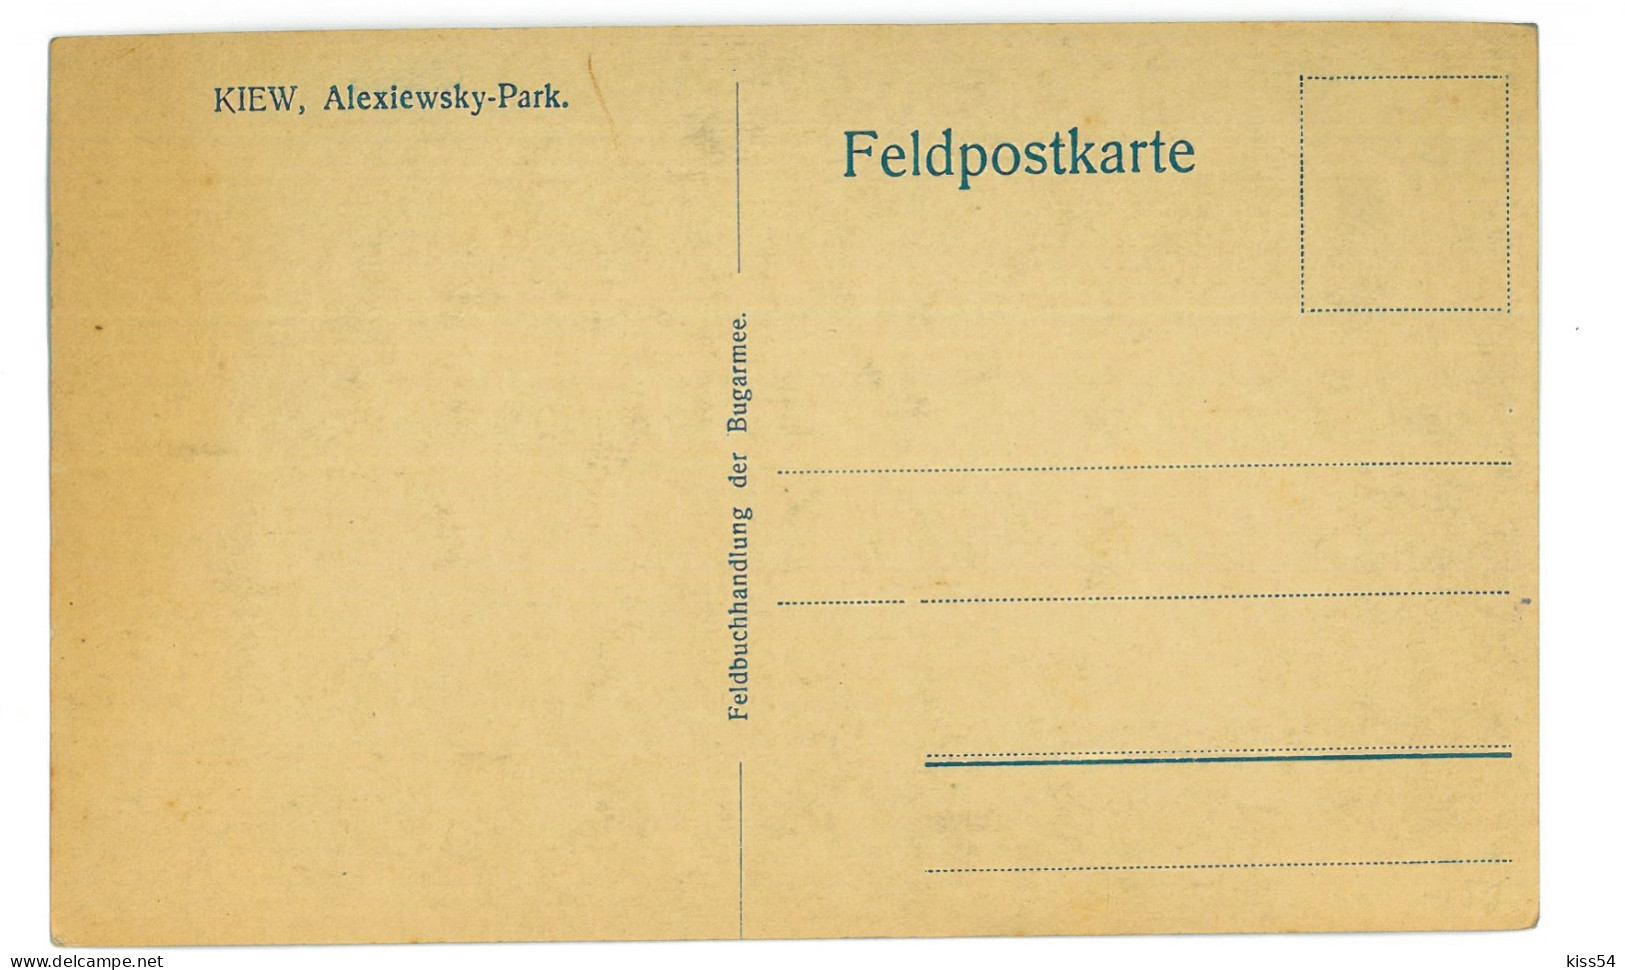 UK 29 - 24343 KIEV, Alexiewsky Park, Ukraine - Old Postcard - Unused - Ucrania